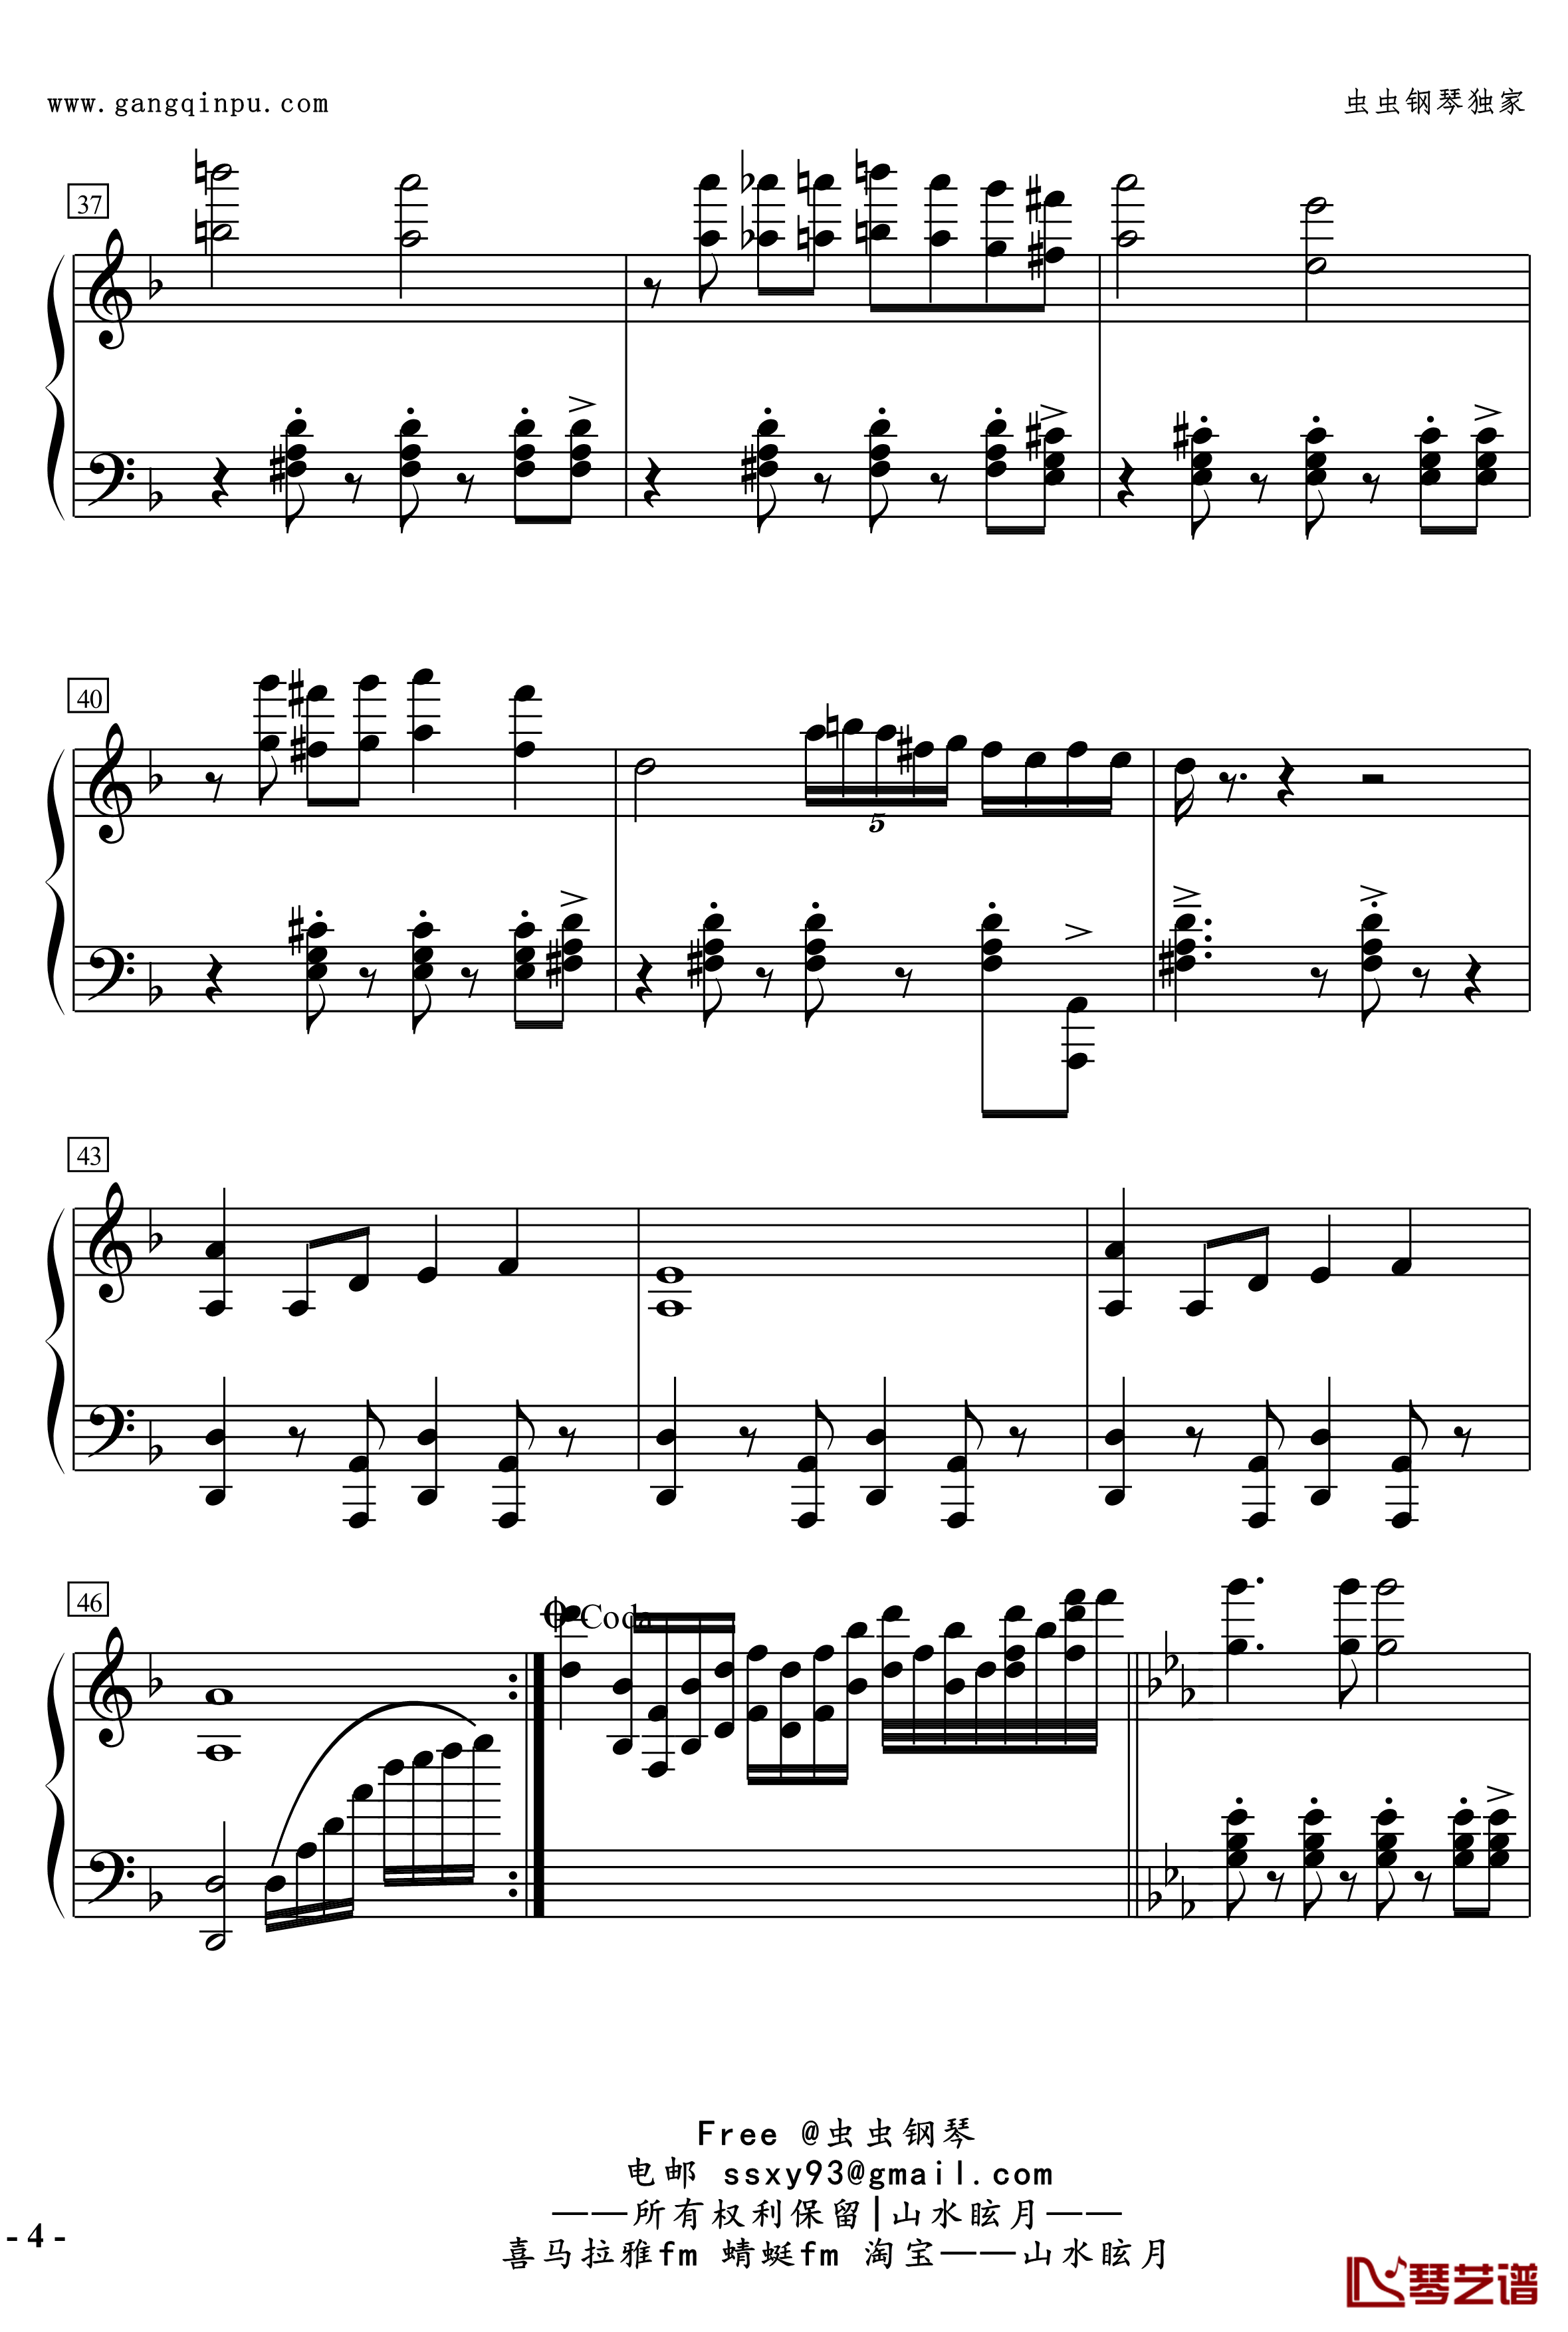 No.2無名探戈钢琴谱-修订-jerry57434